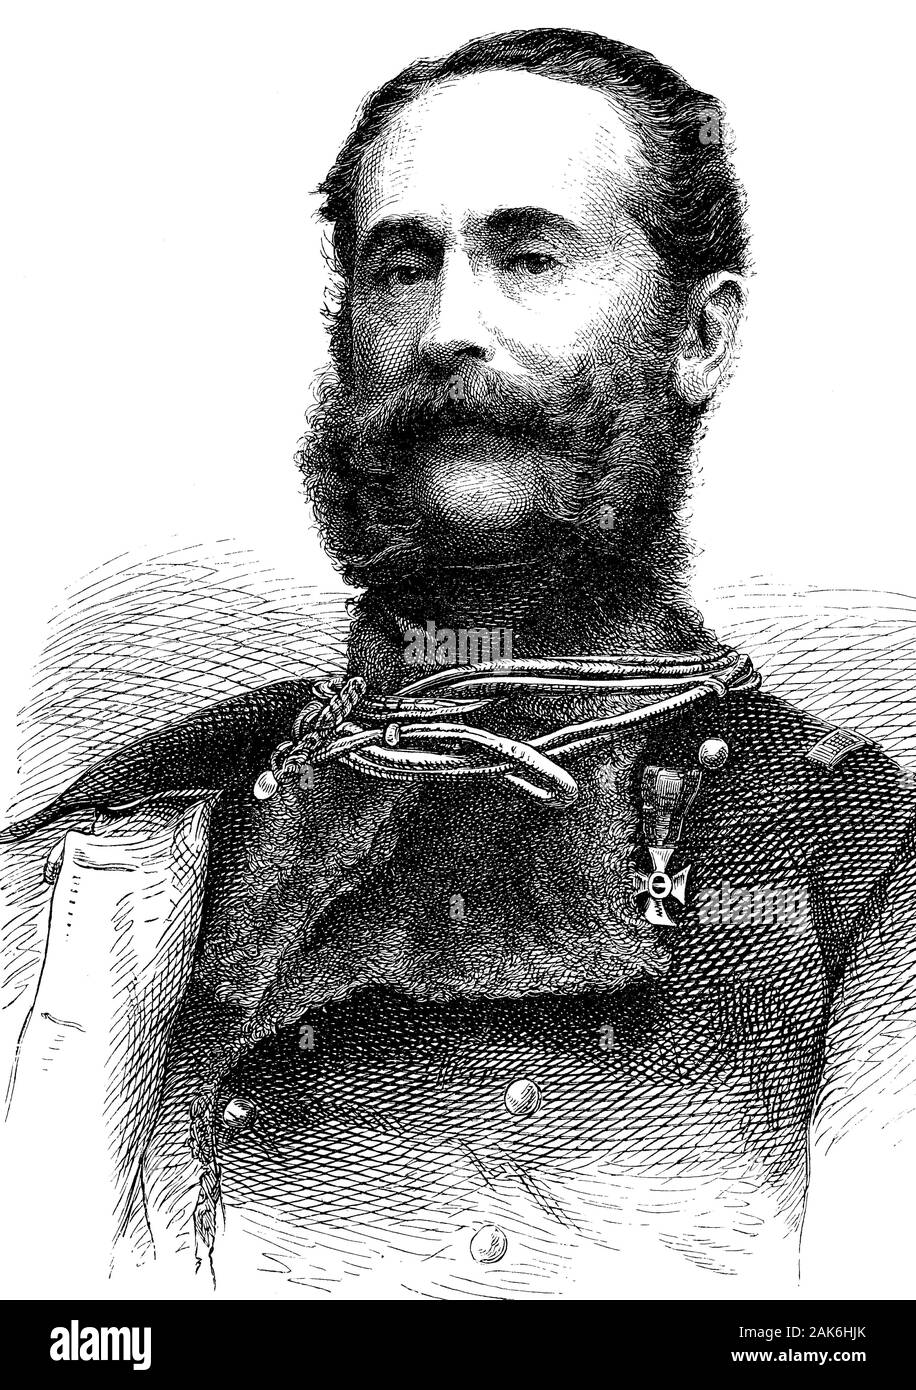 Ludwig Karl Wilhelm Freiherr von Gablenz, 1814-1874, war ein österreichischer General der Kavallerie, Holzschnitt aus dem Jahre 1864 Stock Photo